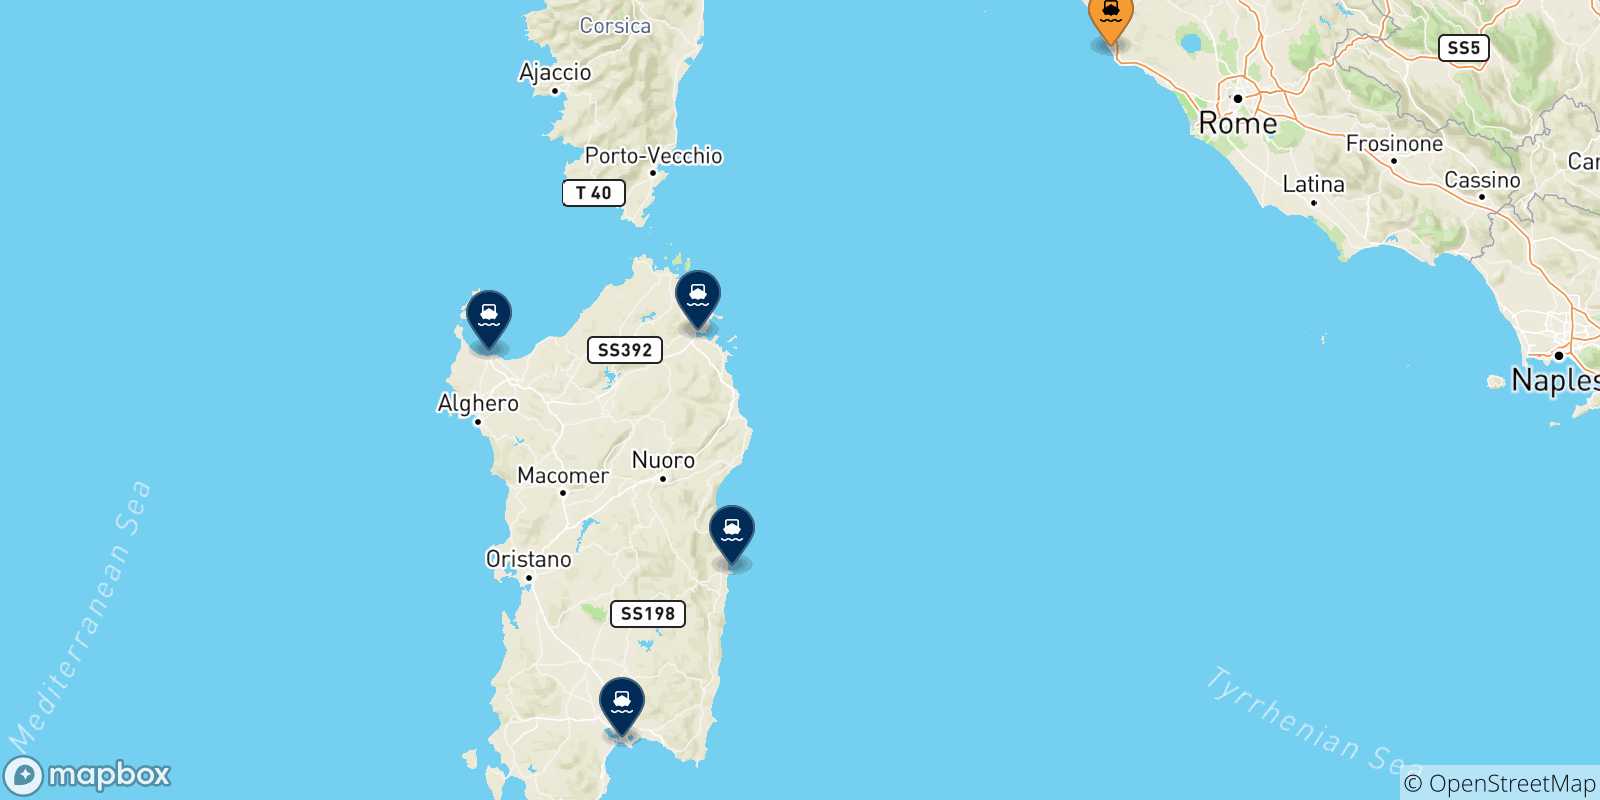 Mappa delle possibili rotte tra Civitavecchia e la Sardegna